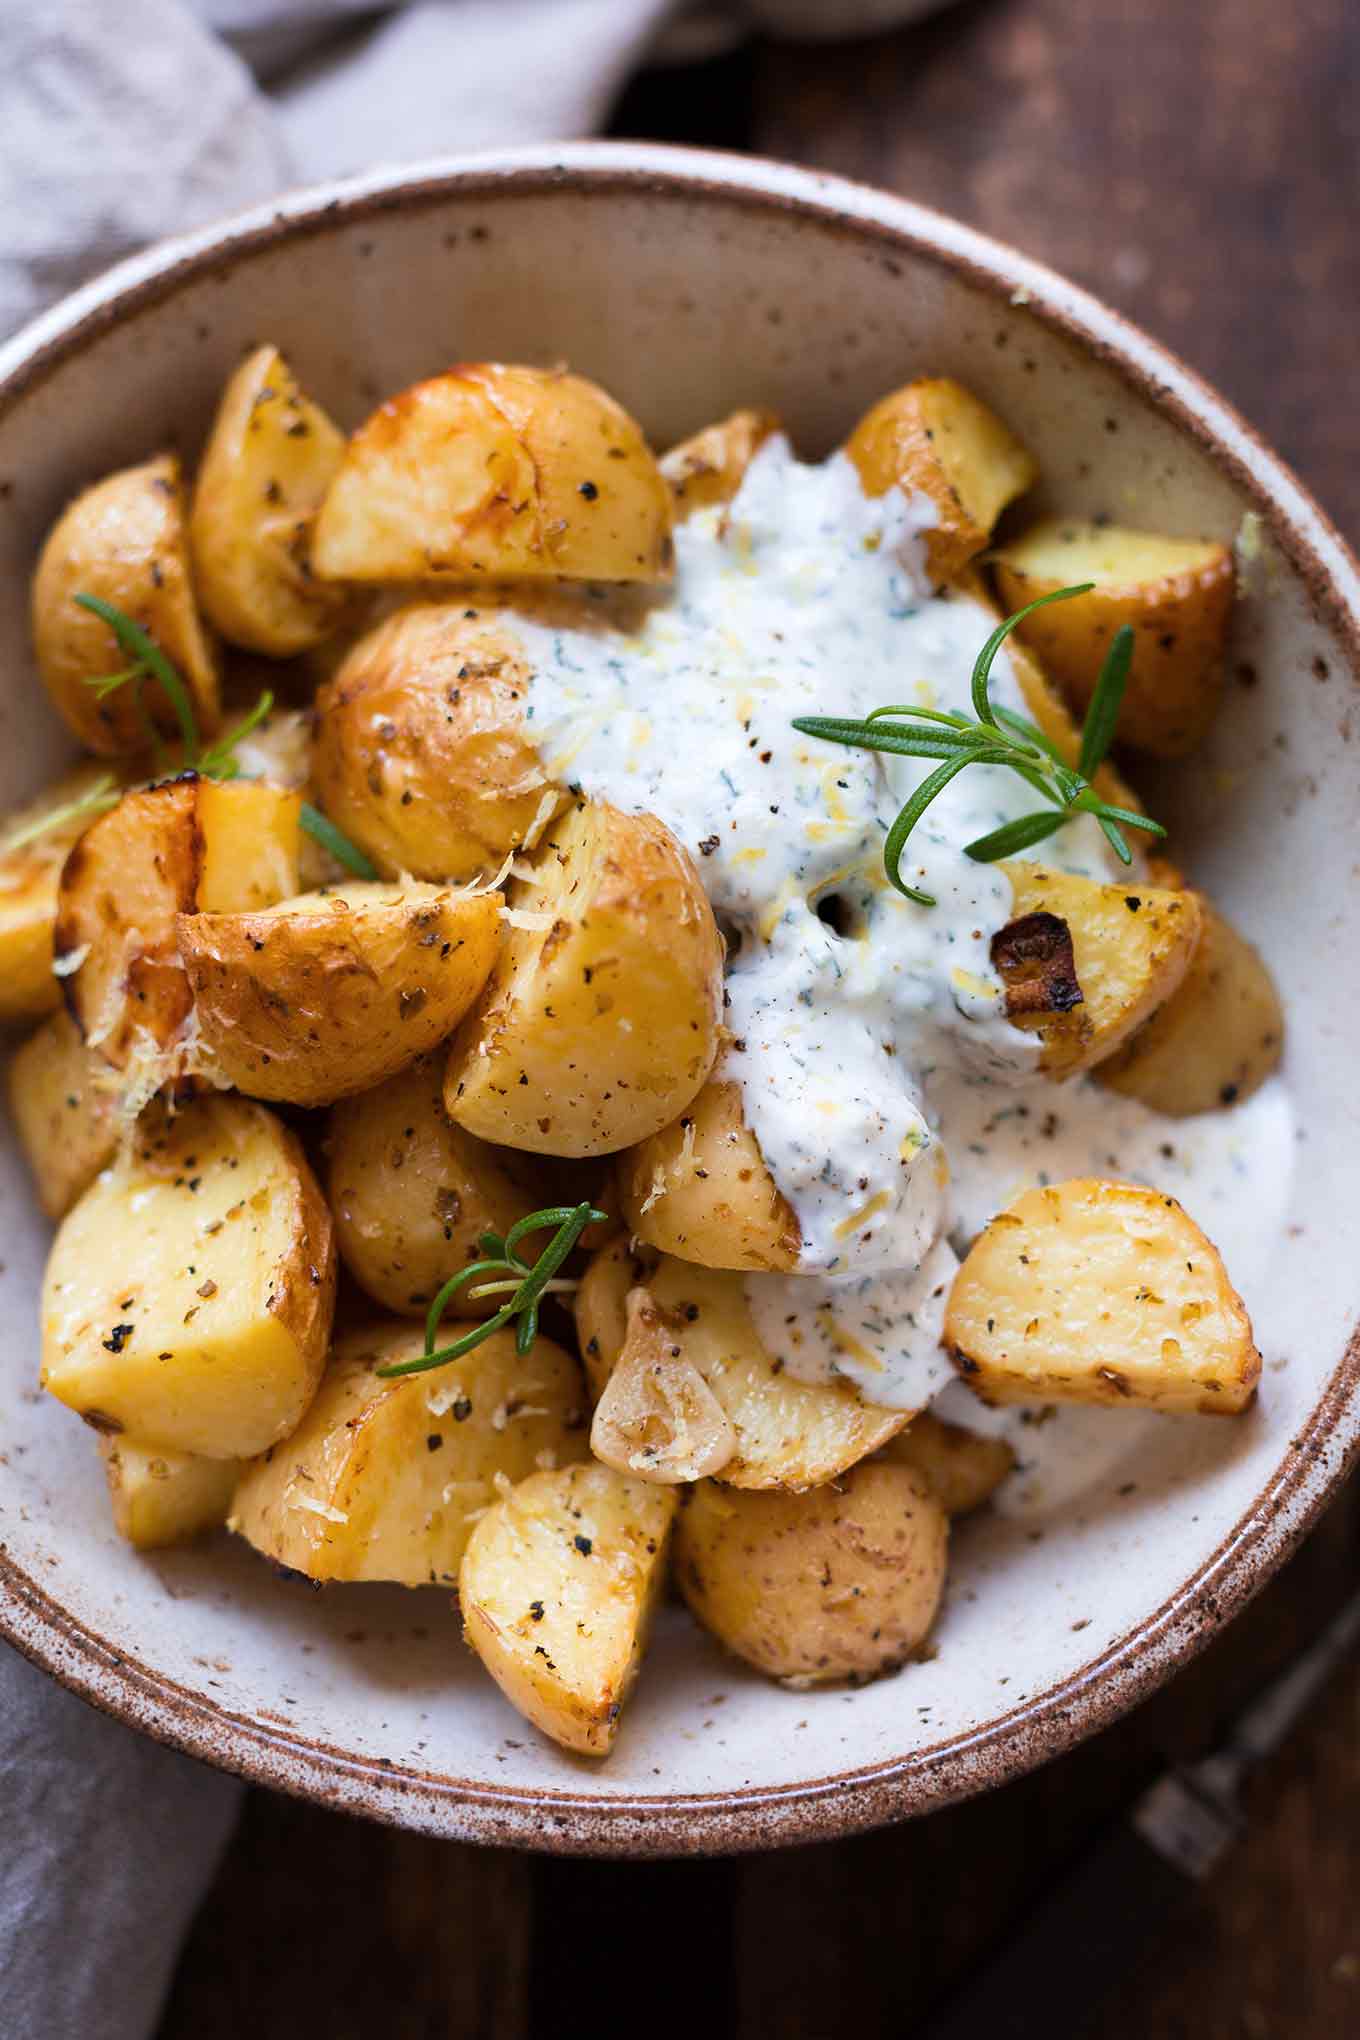 Griechische Ofenkartoffeln mit Joghurt-Feta-Dip. 20+ schnelle und gesunde Vorratsrezepte. Für alle Rezepte braucht ihr nur Zutaten aus Kühkschrank und Vorratskammer - Kochkarussell Foodblog #vorratsrezepte #vorrat #mealprep